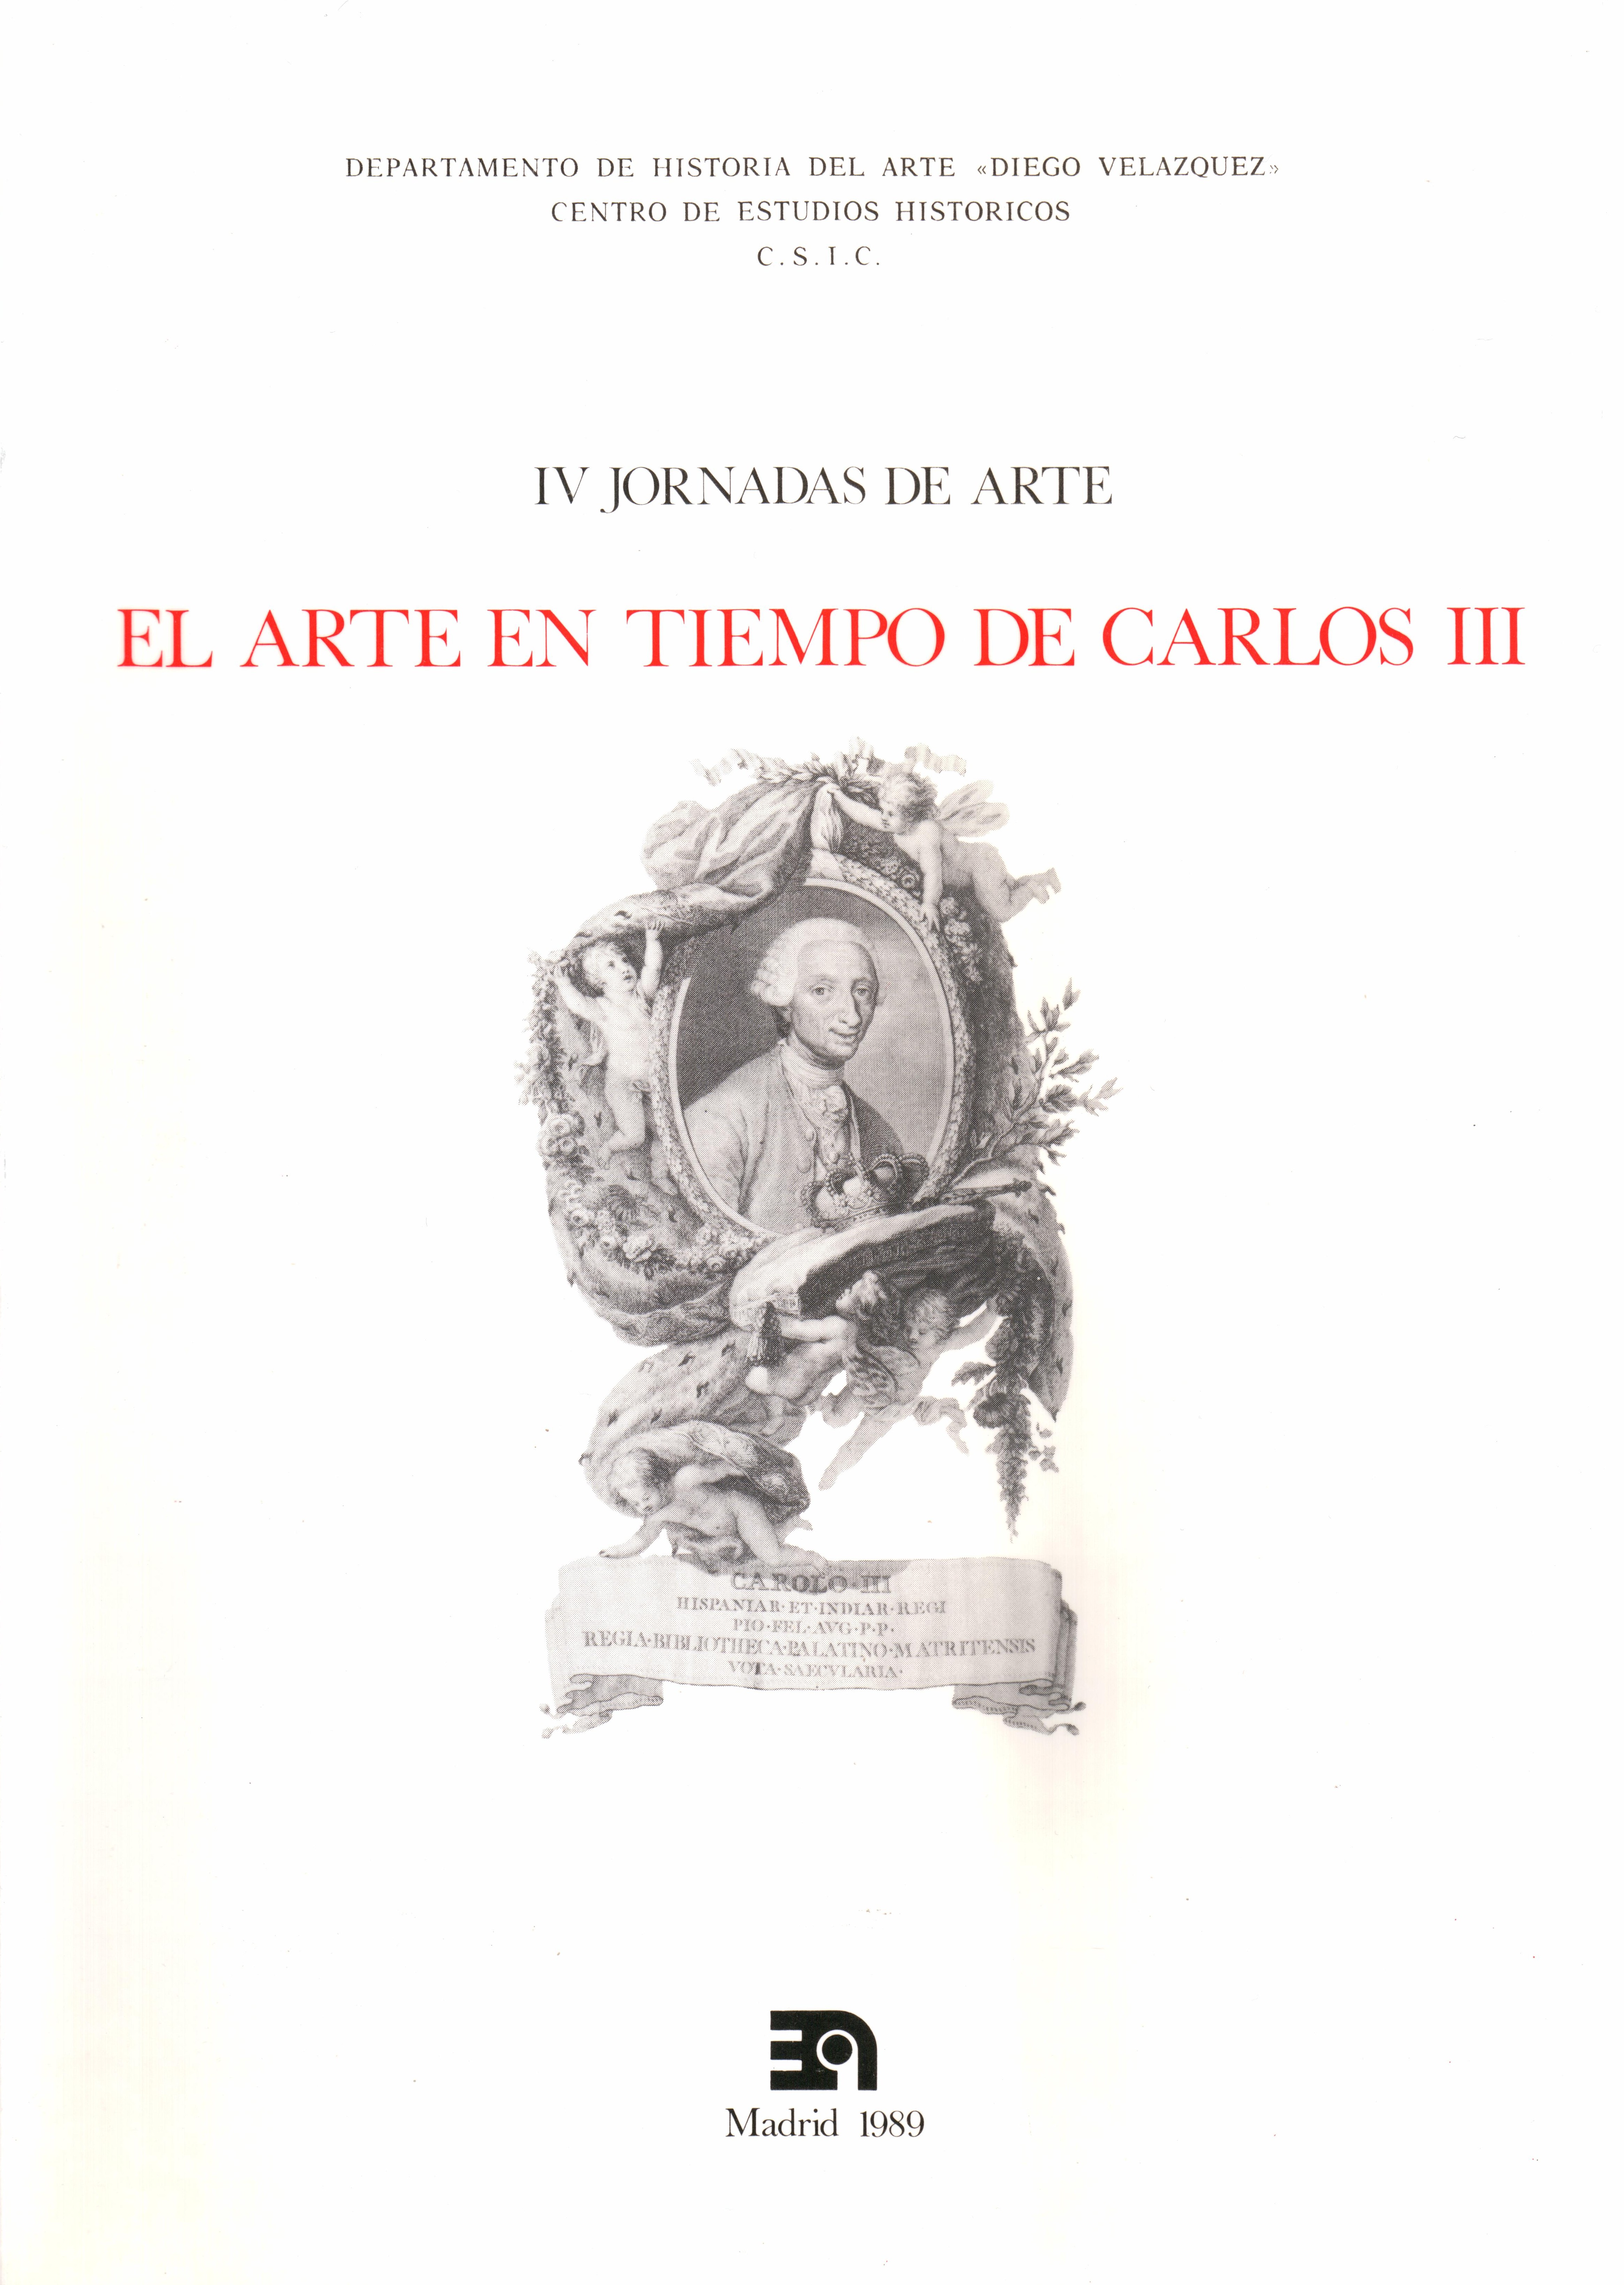 El arte en tiempos de Carlos III
IV Jornadas de arte